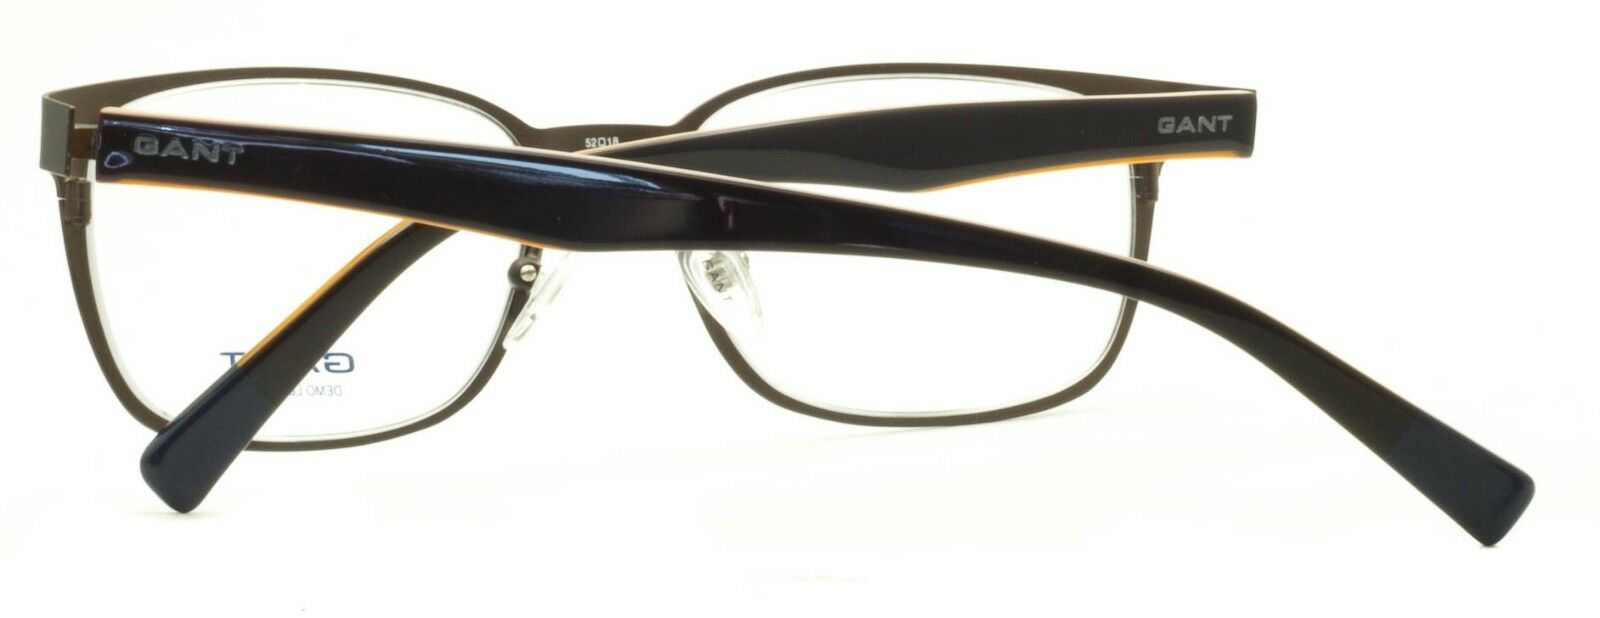 GANT G ETHAN SBRN RX Optical Eyewear FRAMES Glasses Eyeglasses - New TRUSTED